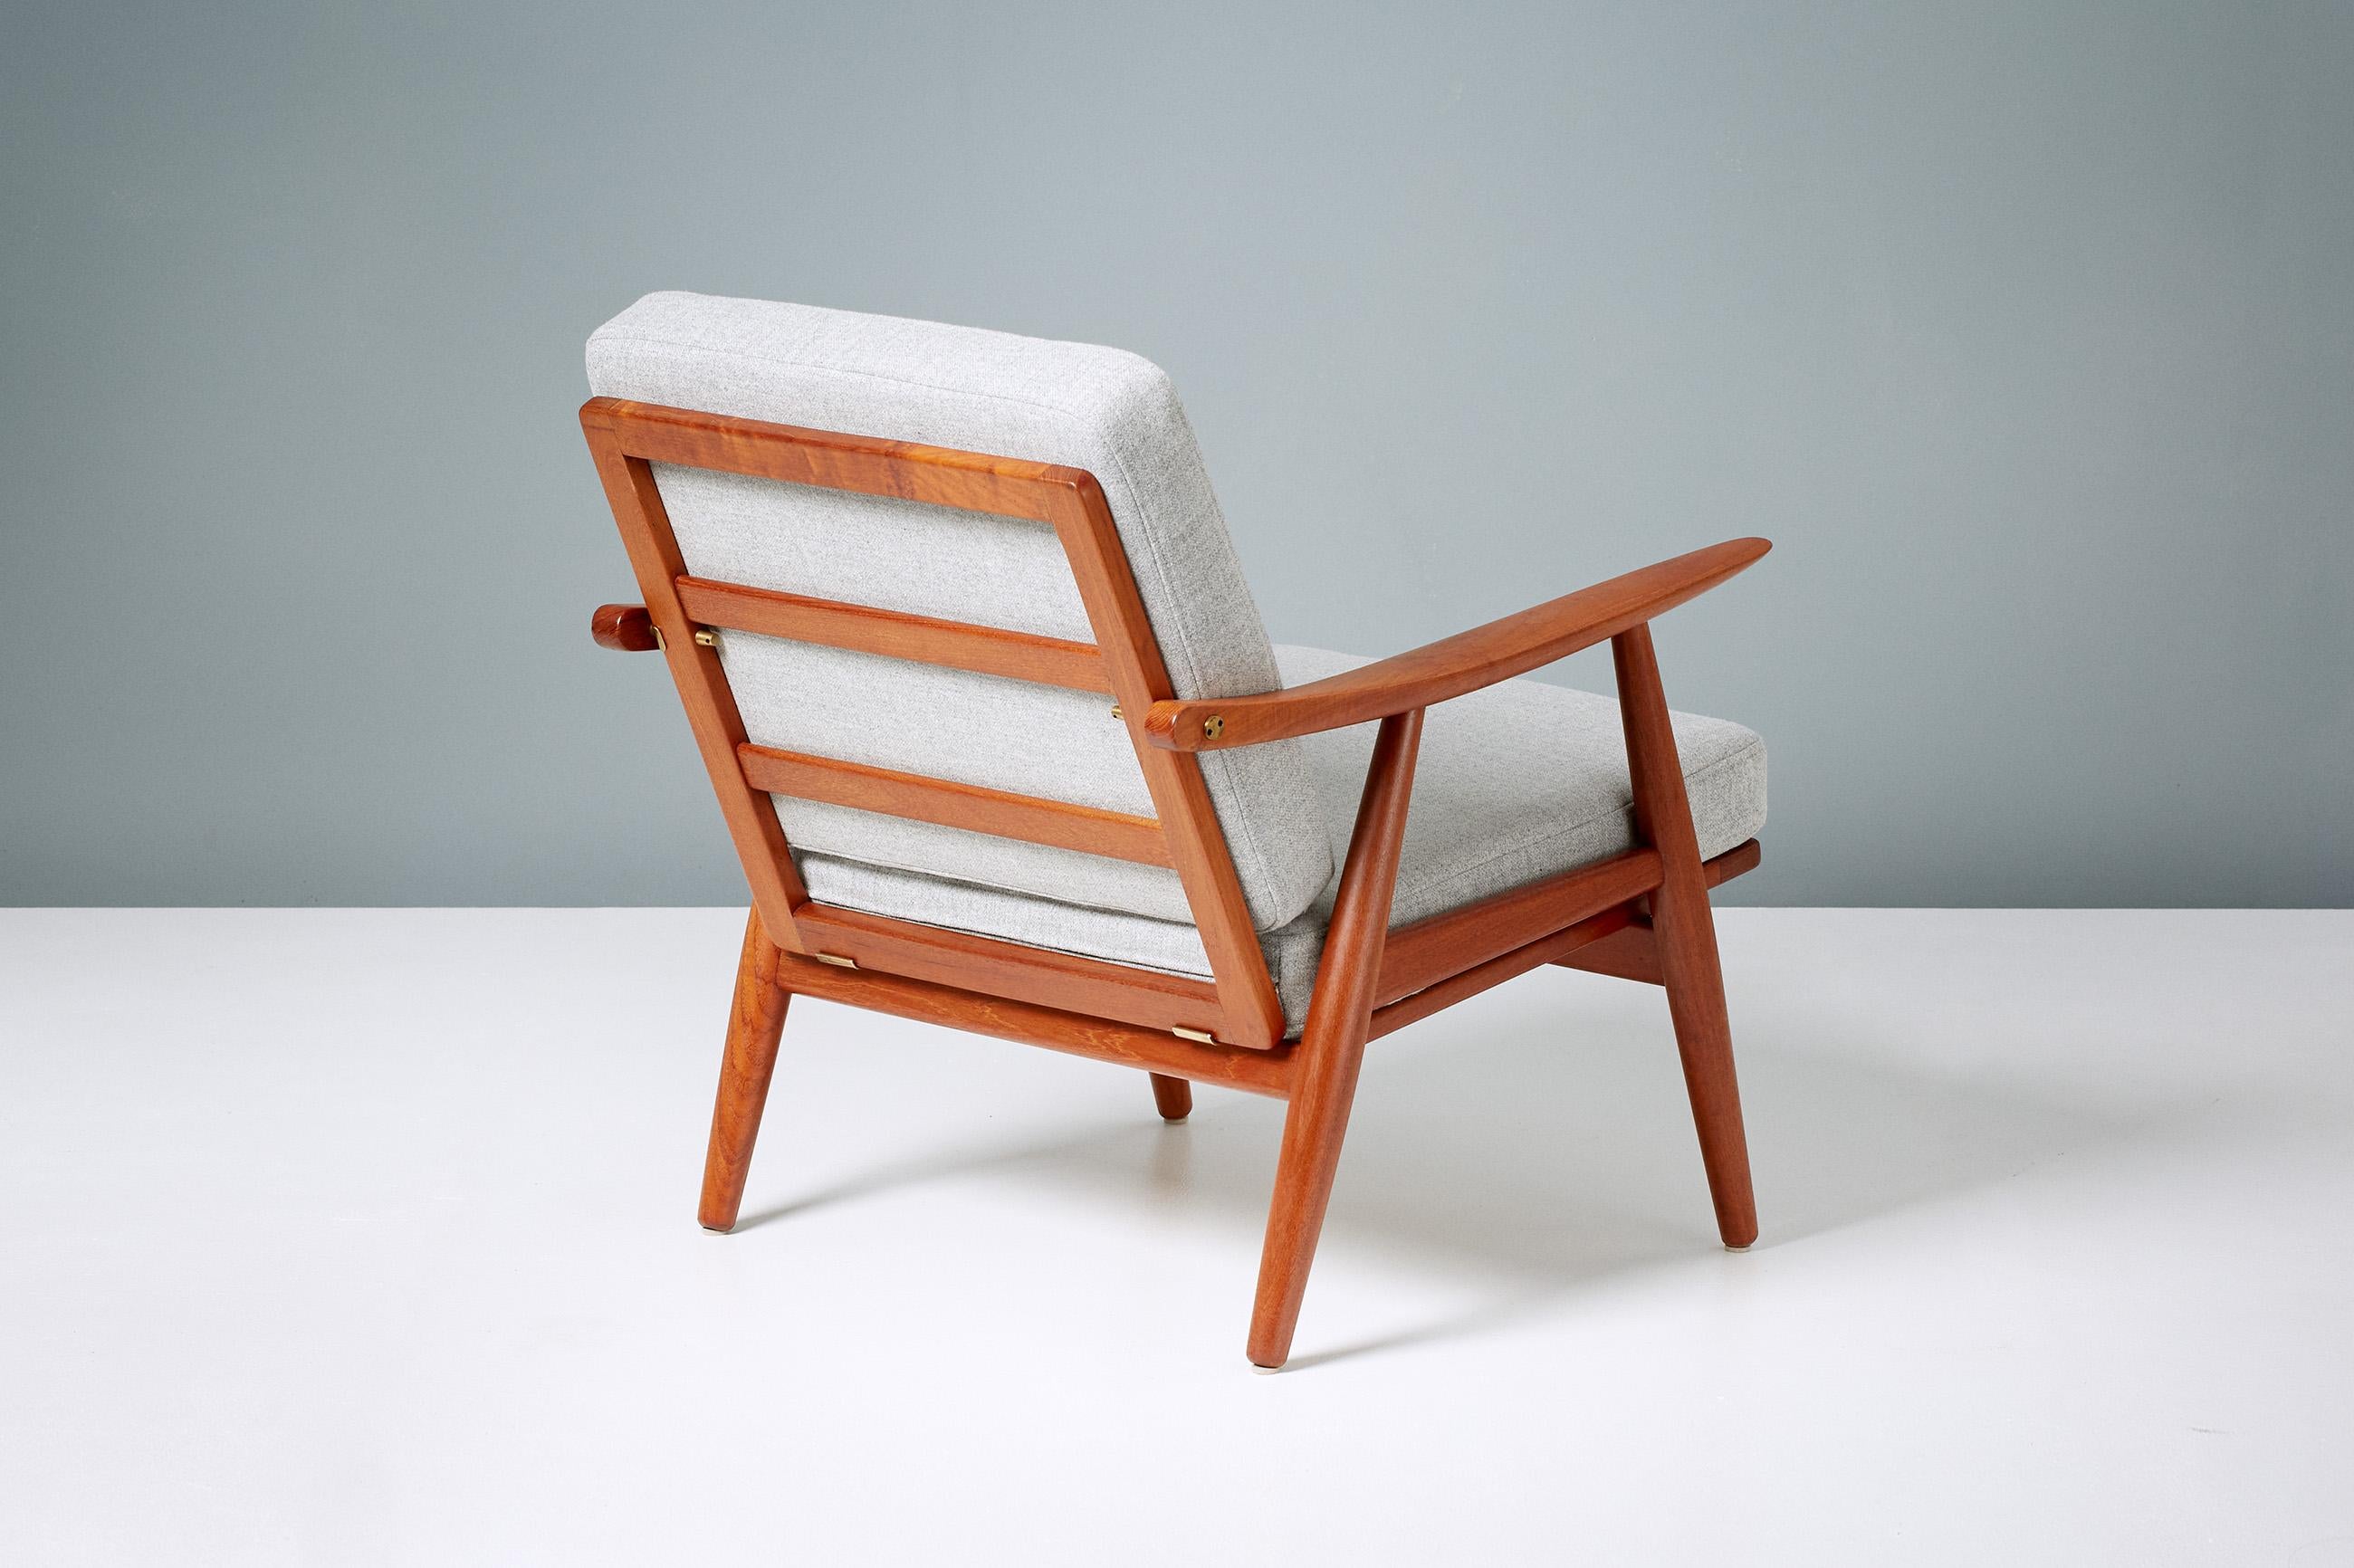 Hans Wegner
GE-270 Liegestuhl, 1956

Klassischer Wegner-Sessel, hergestellt von GETAMA in Gedsted, Dänemark, in den 1950er Jahren. Restaurierter Teakholzrahmen mit freiliegenden Messingbeschlägen. Neue Schaumstoffkissen, bezogen mit grauem